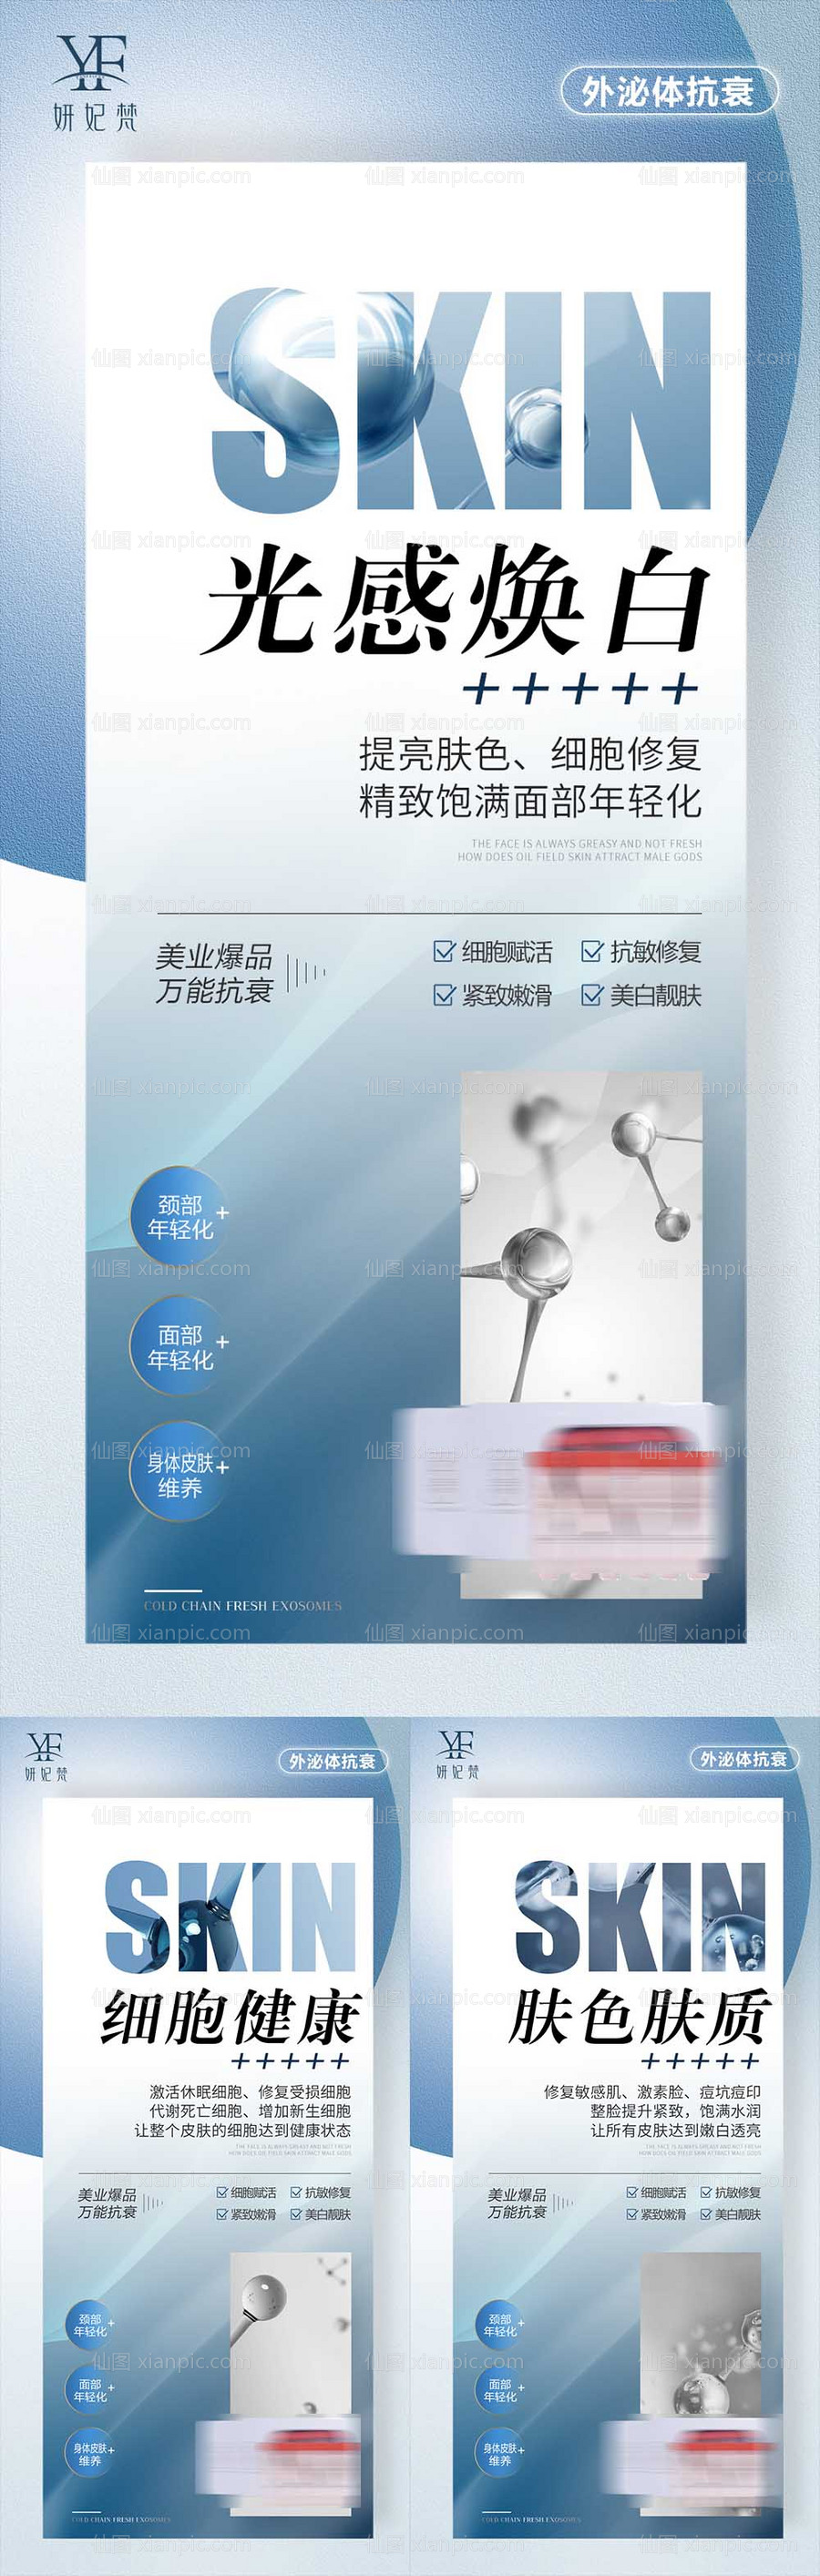 素材乐-医美抗衰外泌体产品系列海报